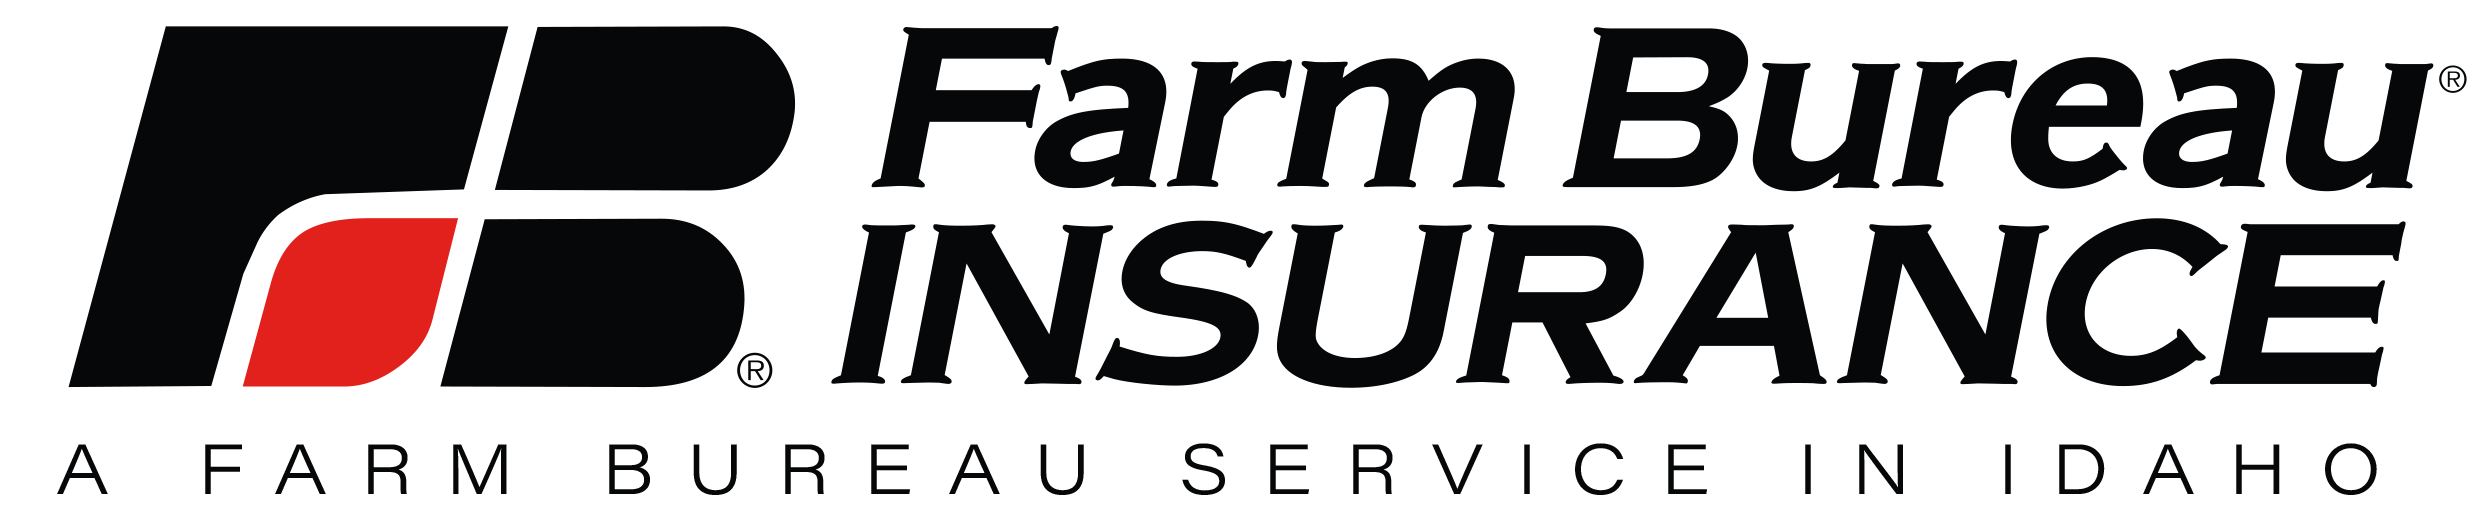 Idaho Farm Bureau Insurance Company logo